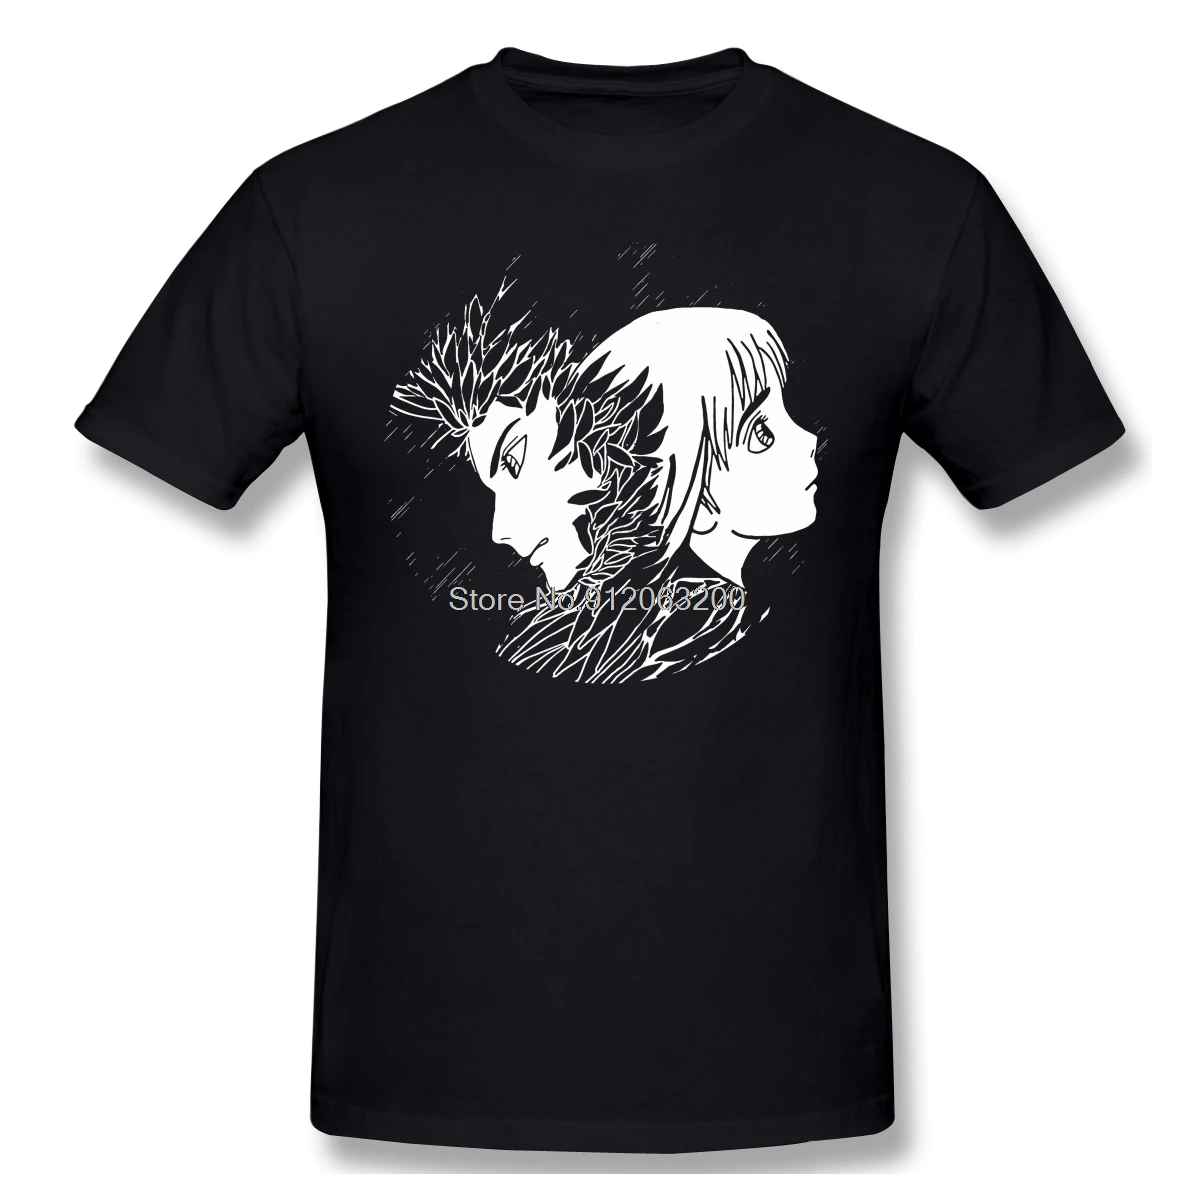 

Футболка Totoro с Аниме Манга Миядзаки, Новое поступление, футболка Howl And Sophie с уникальным дизайном, хлопковые футболки в стиле Харадзюку, уличн...